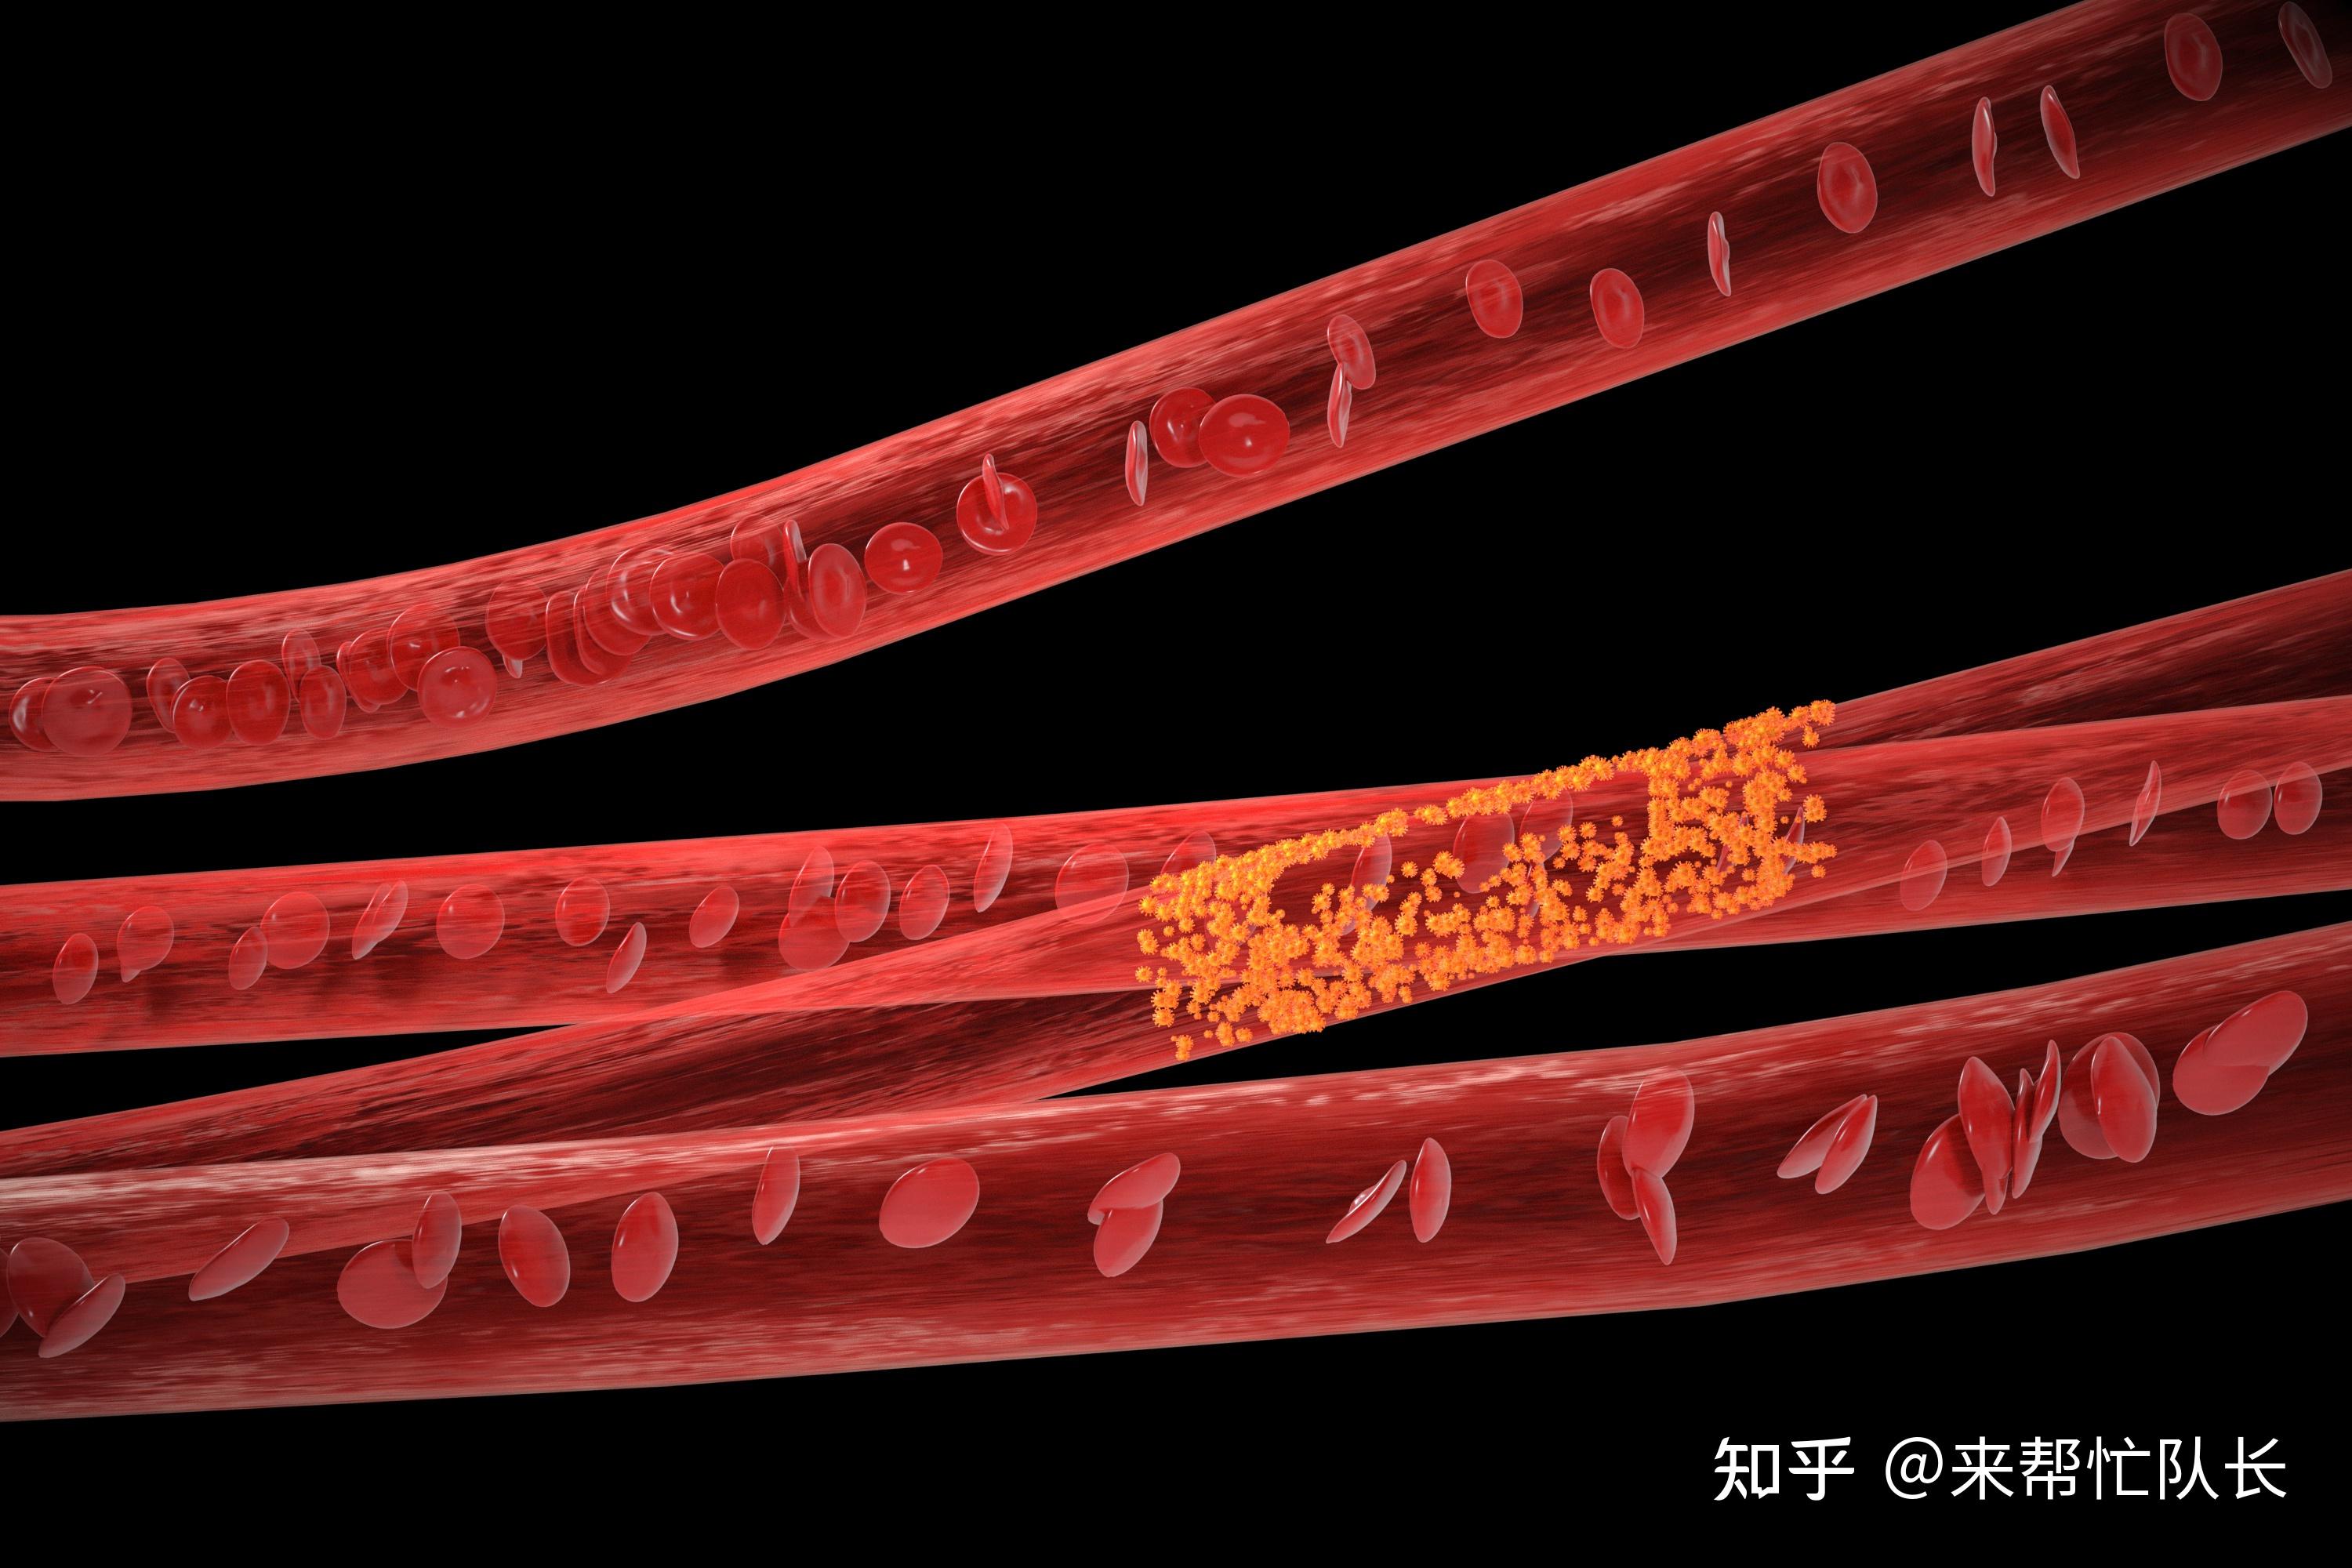 海绵状血管瘤